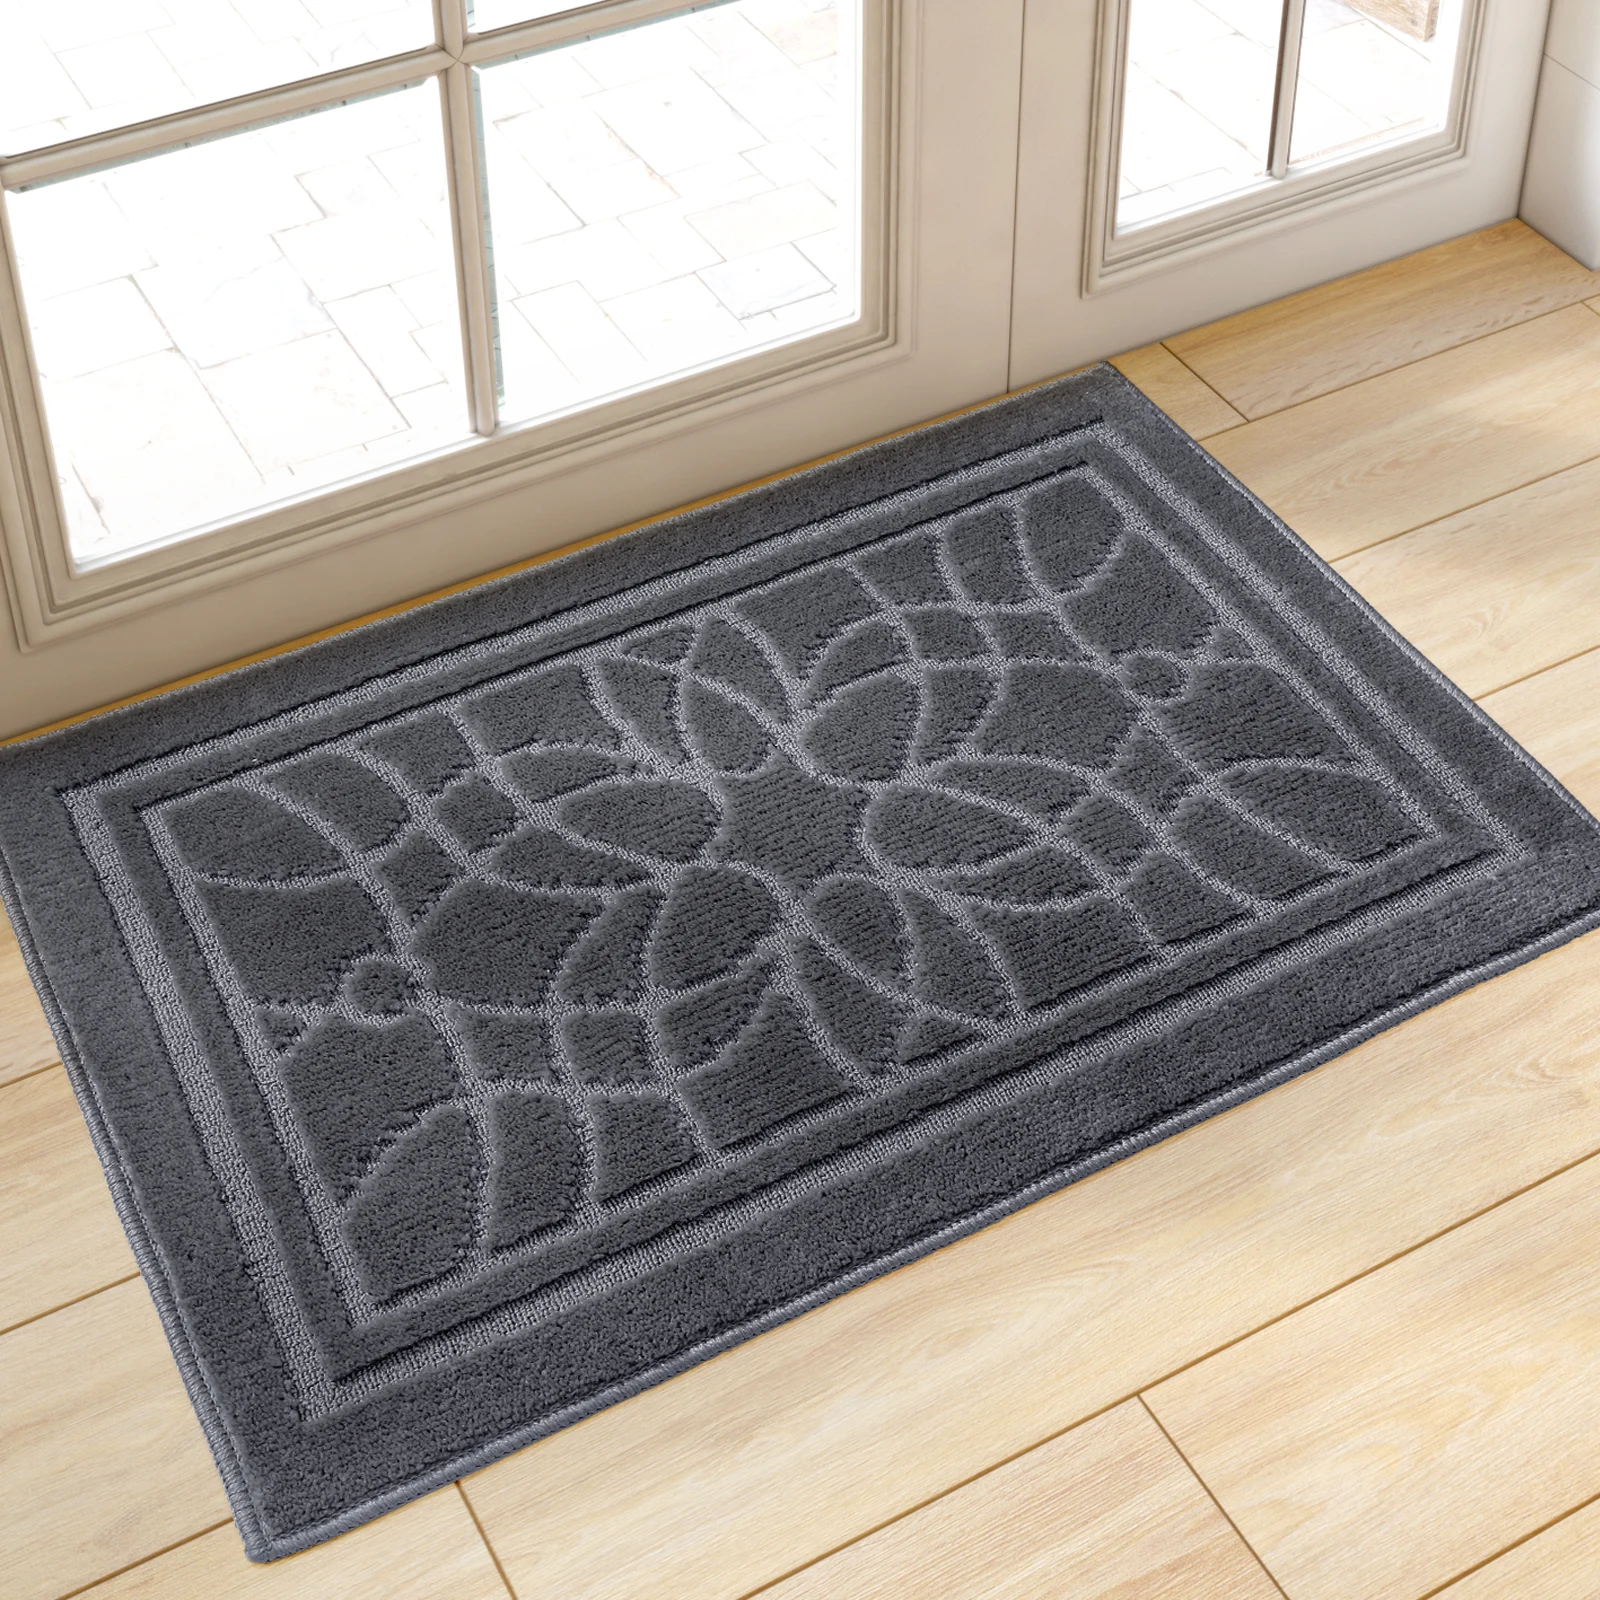 

DEXI Front Indoor Entrance Floormat Outdoor Polyester Doormat Antislip Floor Door Mat For Home